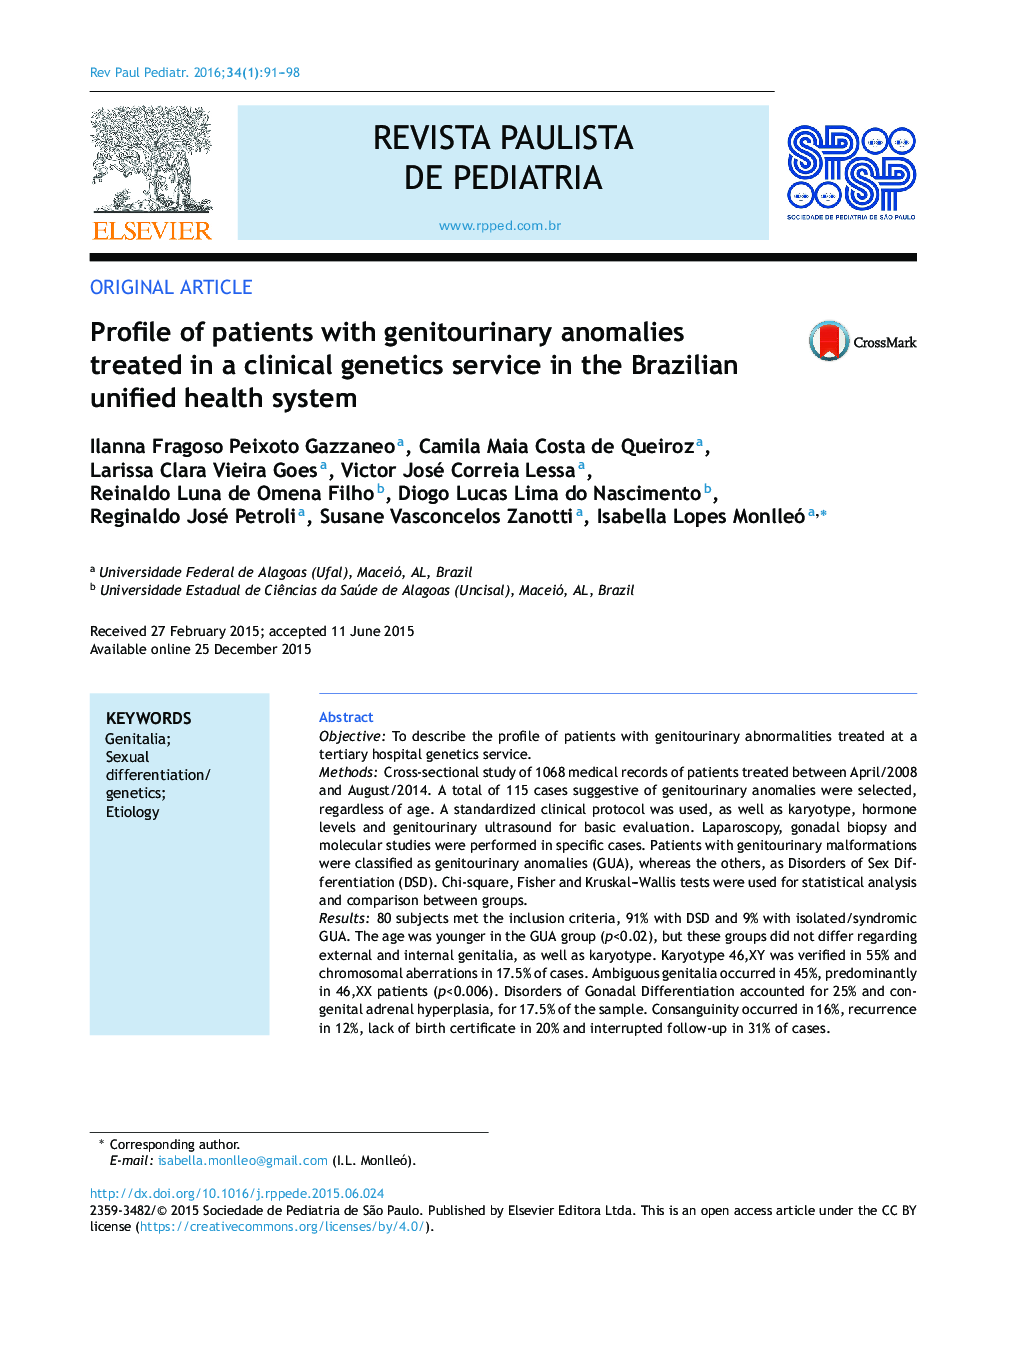 مشخصات بیماران مبتلا به آنومالی های تناسلی که در یک سرویس ژنتیک بالینی در سیستم بهداشتی متحد برزیل درمان می شوند 